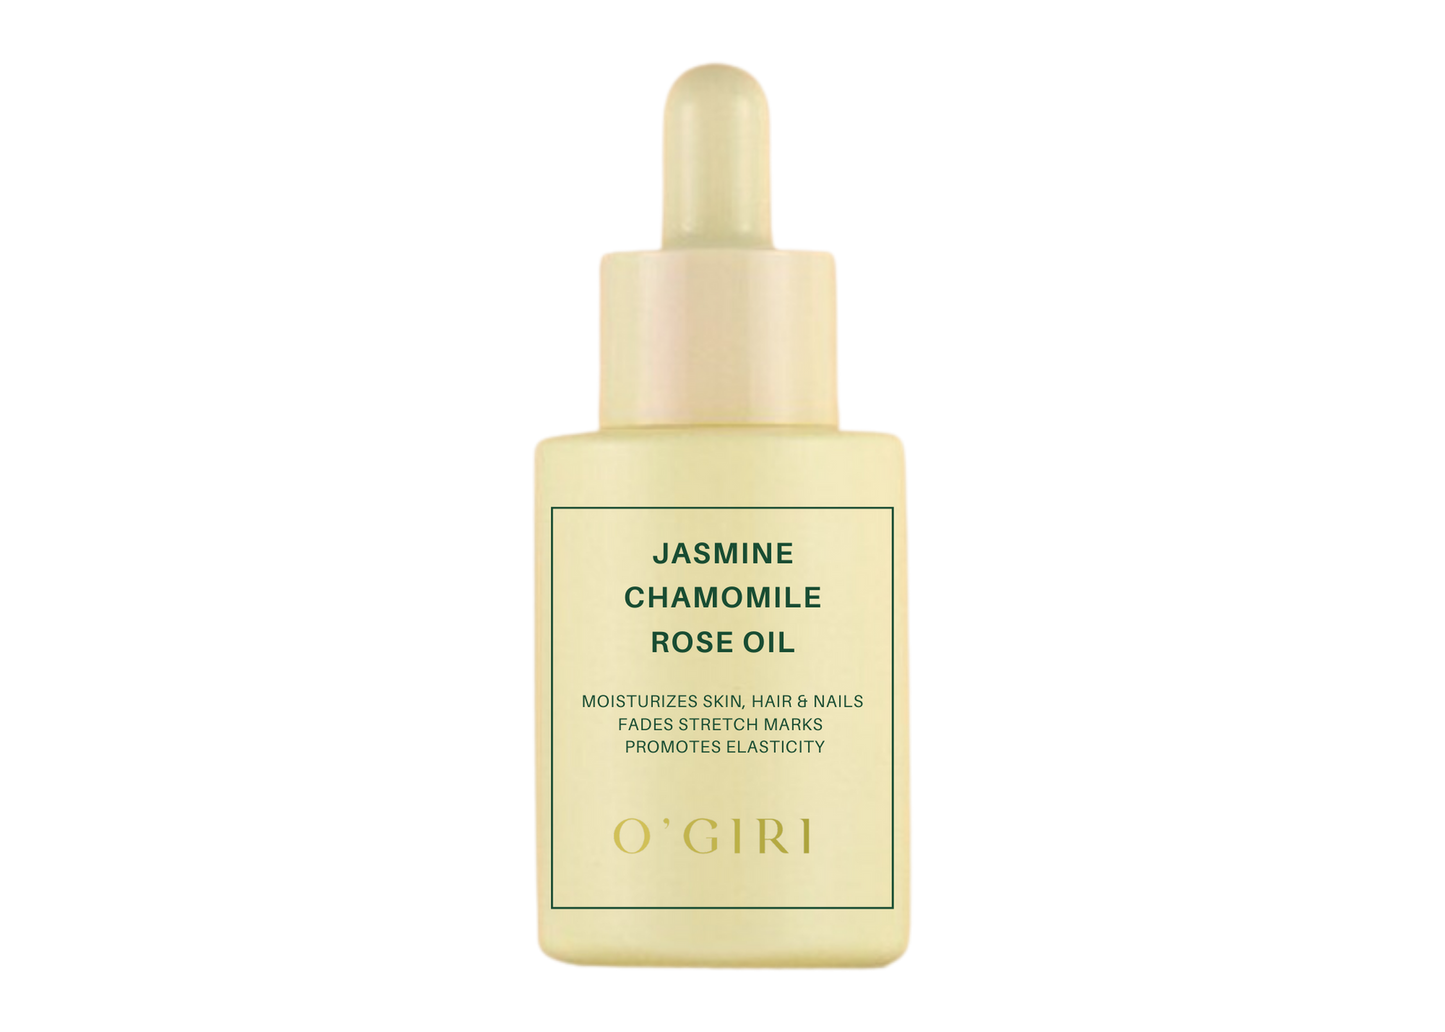 Jasmine, Chamomile & Rose Oil